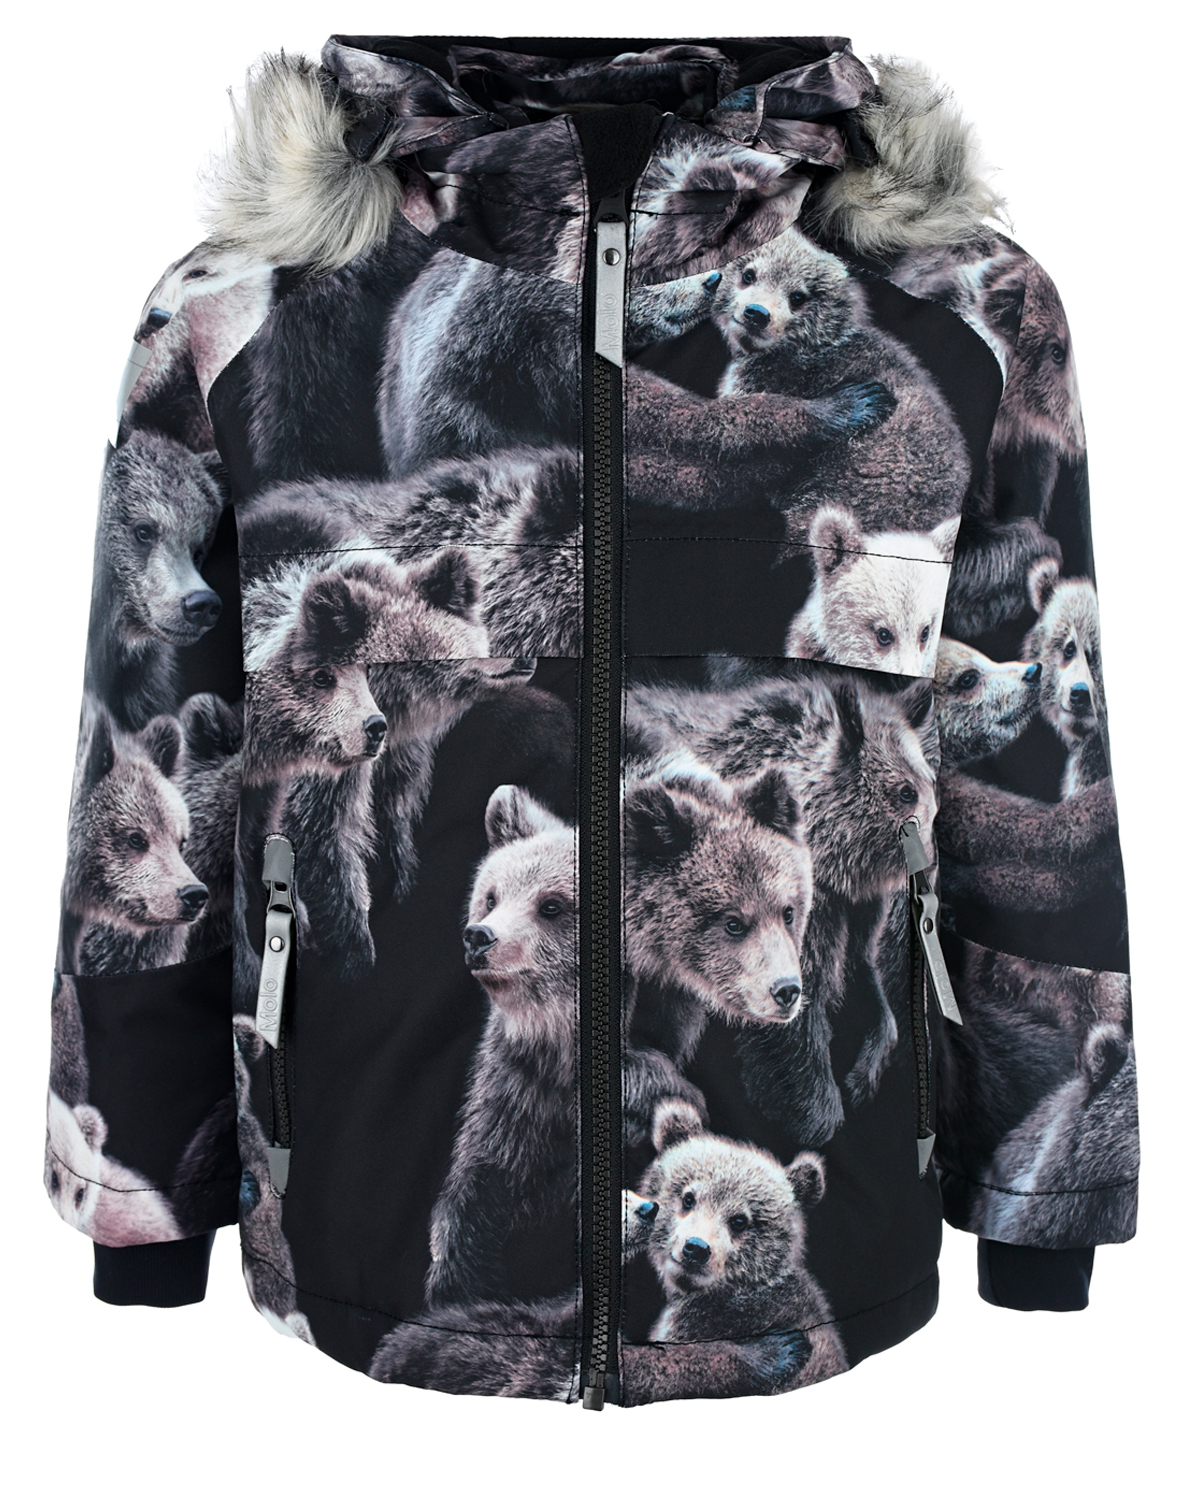 Купить Куртка с принтом медведи Molo детская, Нет цвета, 100%полиэстер, 100%полиуретан